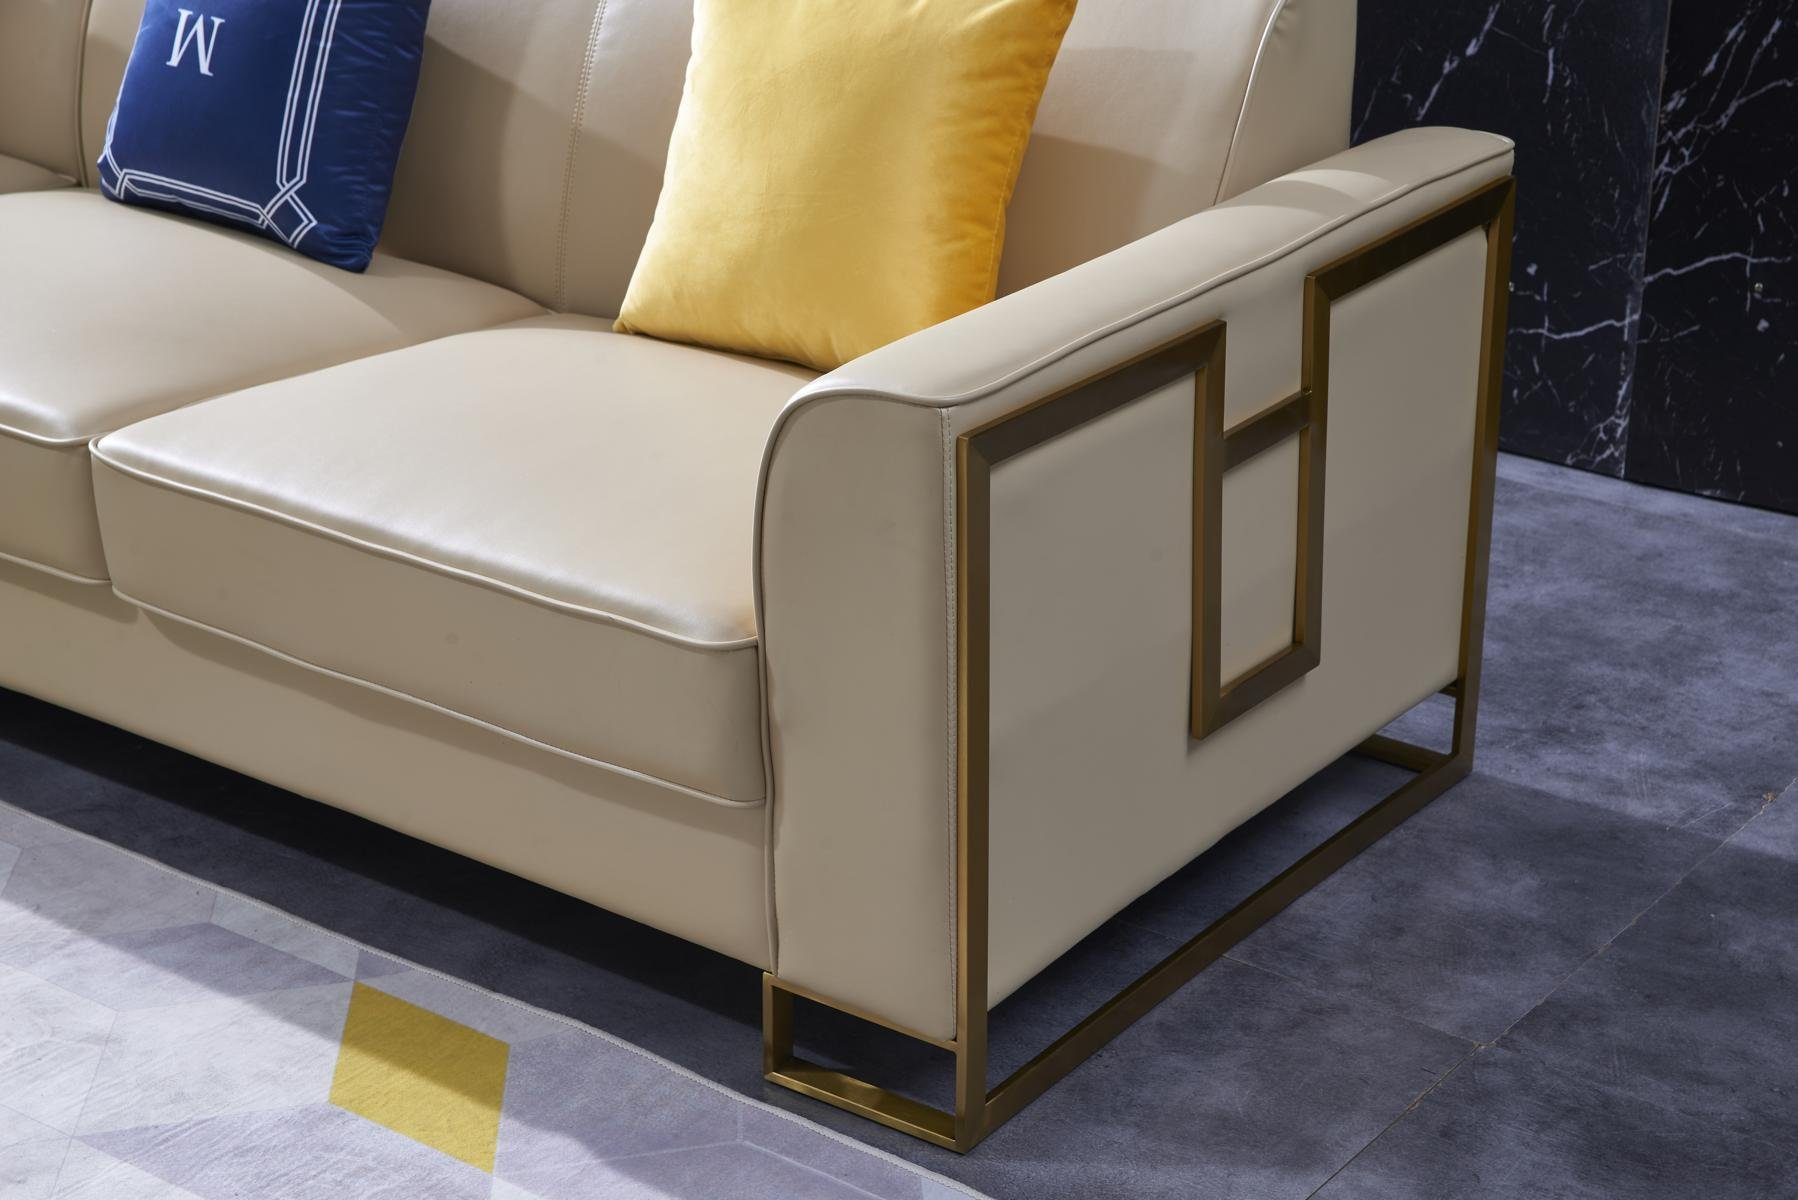 JVmoebel Ecksofa Luxus Design Eck Couch Sofa Sitz Europe Made Wohnlandschaft, Polster Leder in